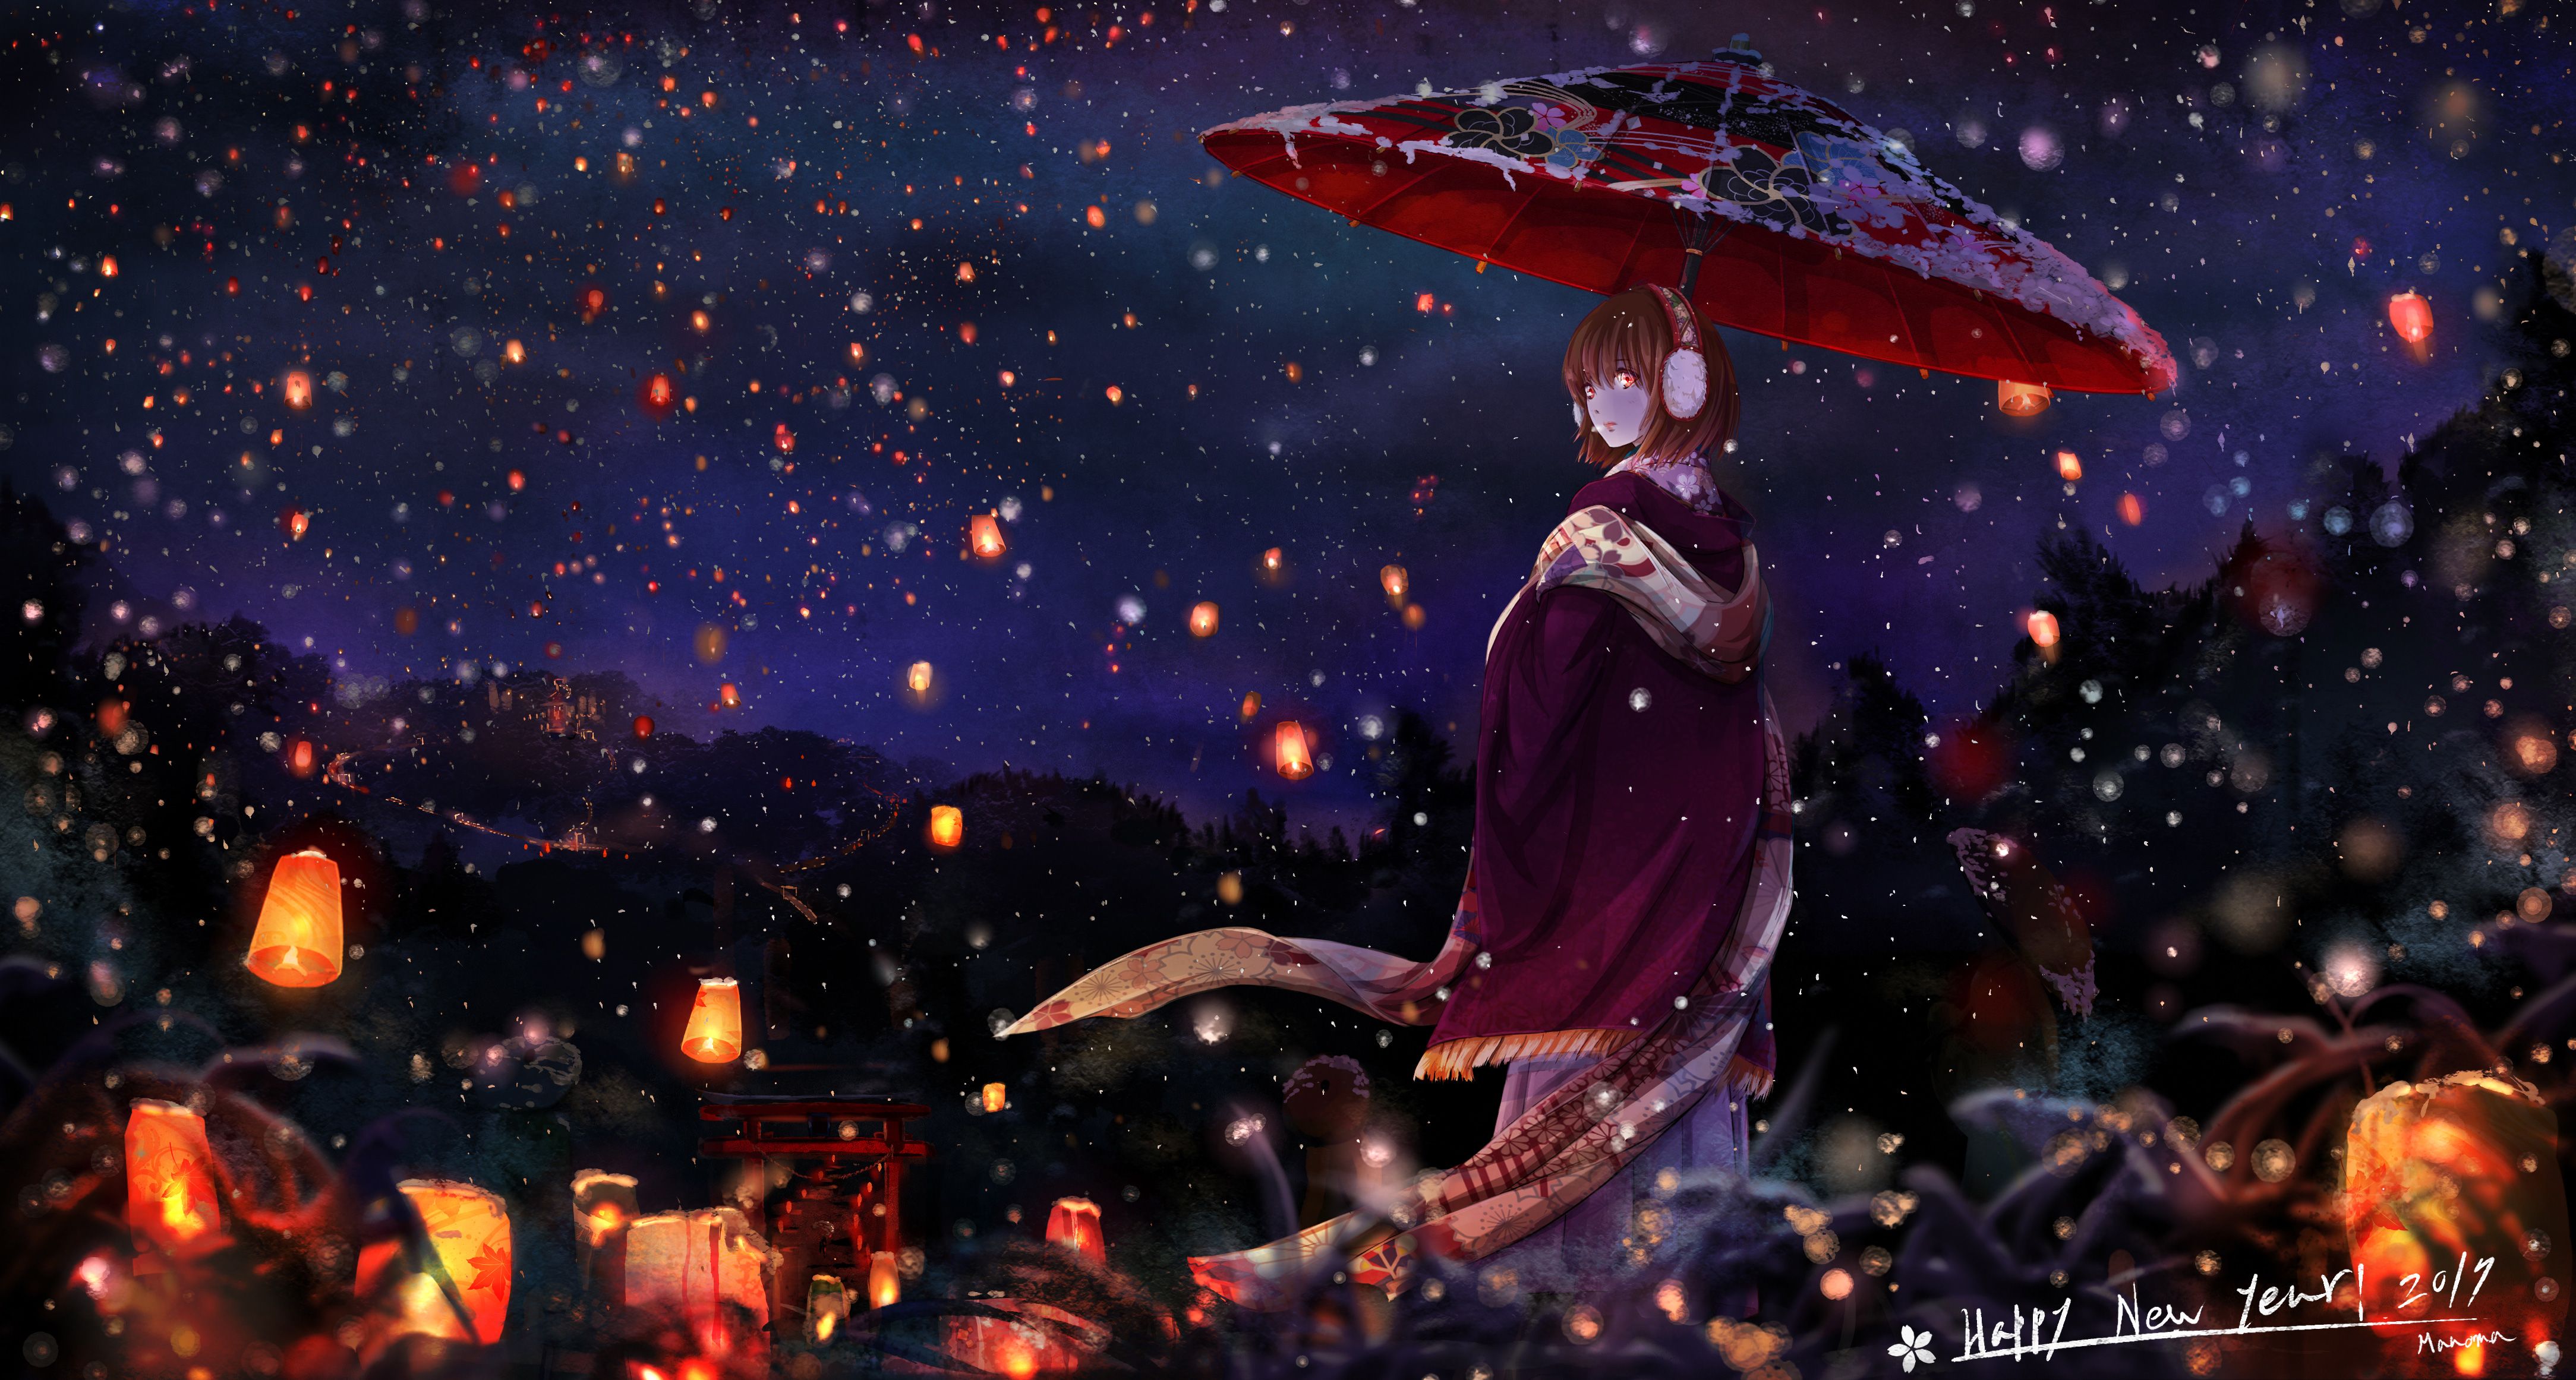 Anime Girl With Umbrella, HD Anime, 4k Wallpaper, Image